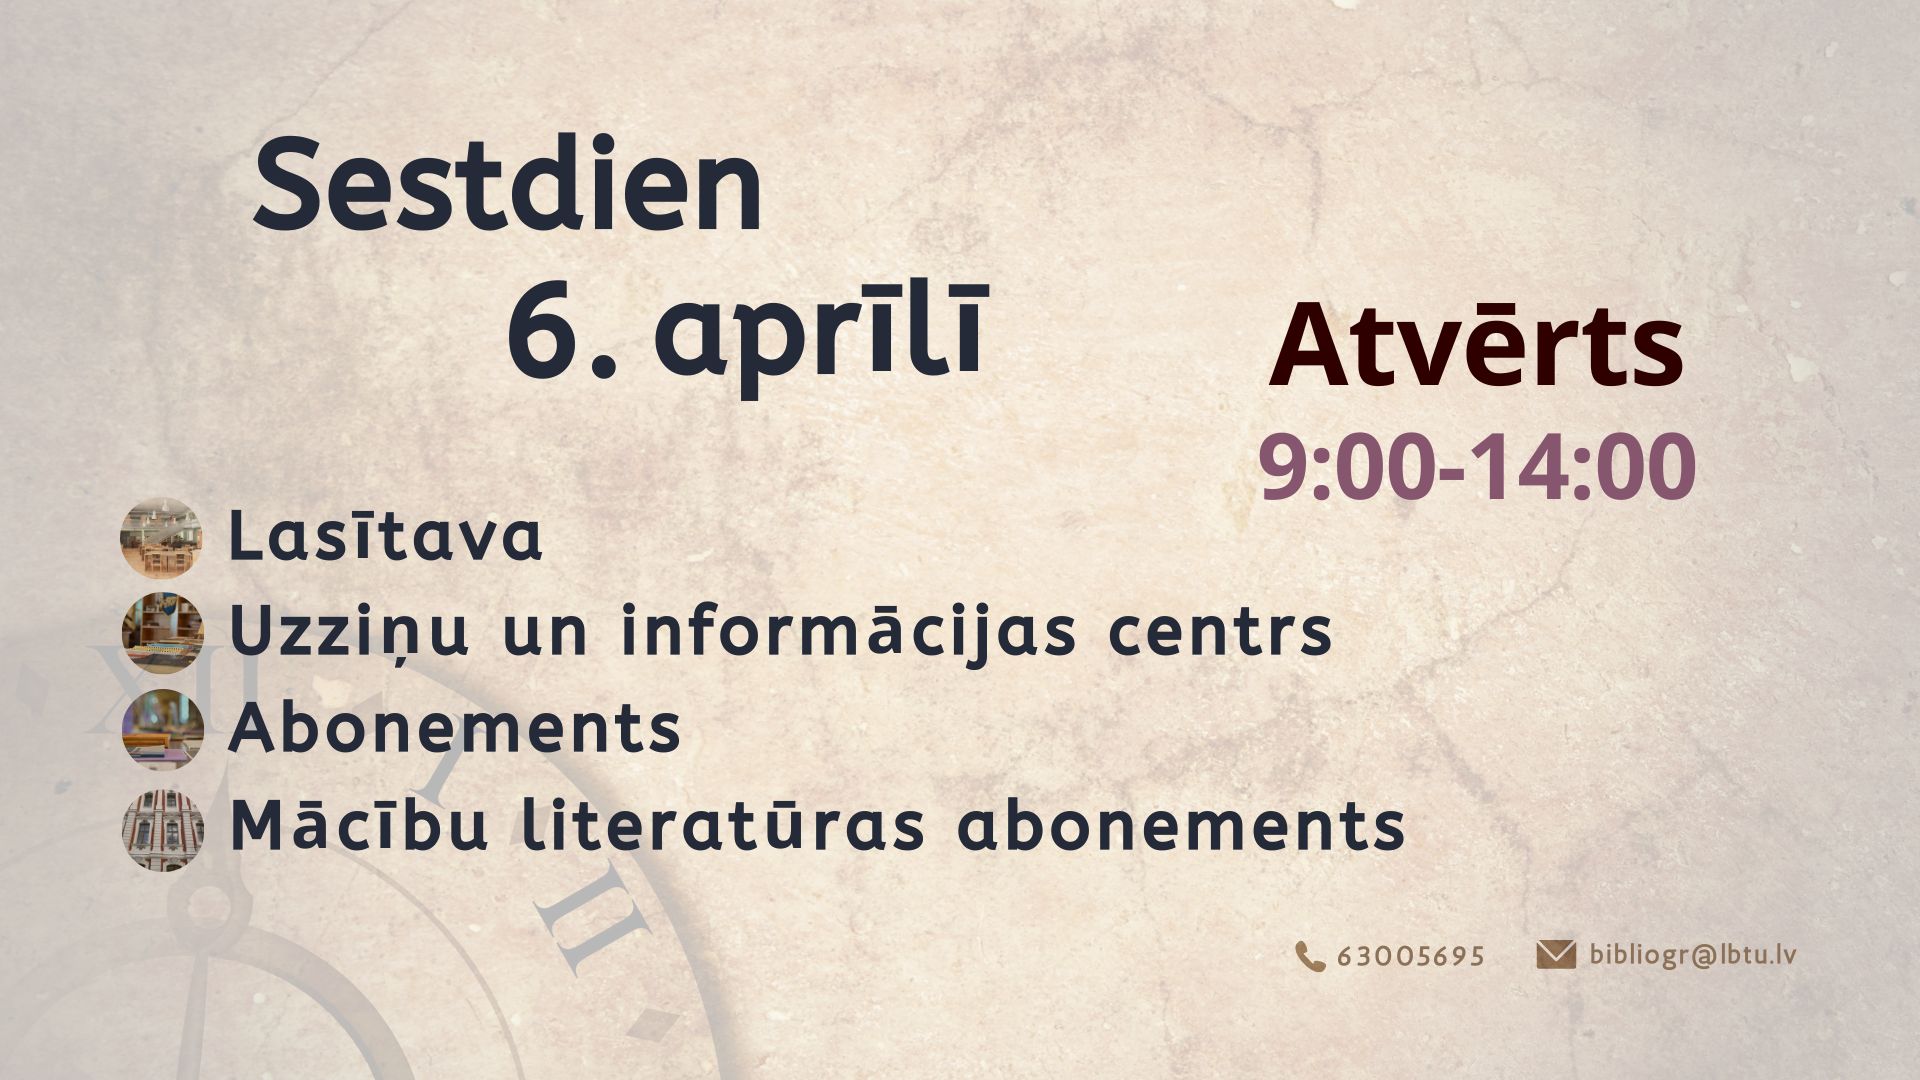 Sestdien, 6. aprīlī, LBTU Fundamentālā bibliotēka lasītājiem atvērta no plkst. 9.00 līdz 14.00